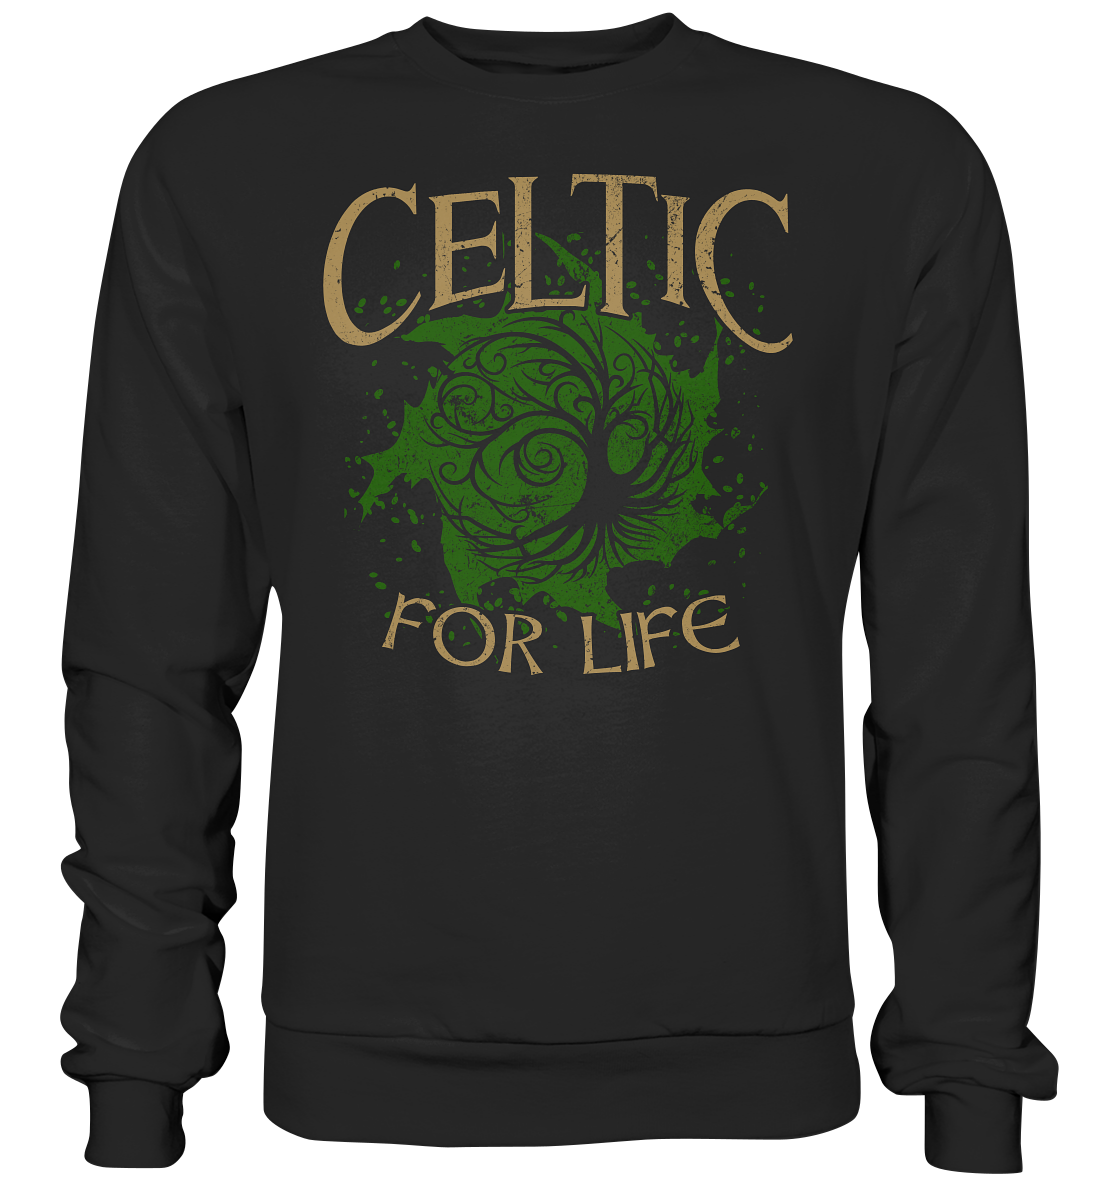 Celtic "For Life" - Premium Sweatshirt